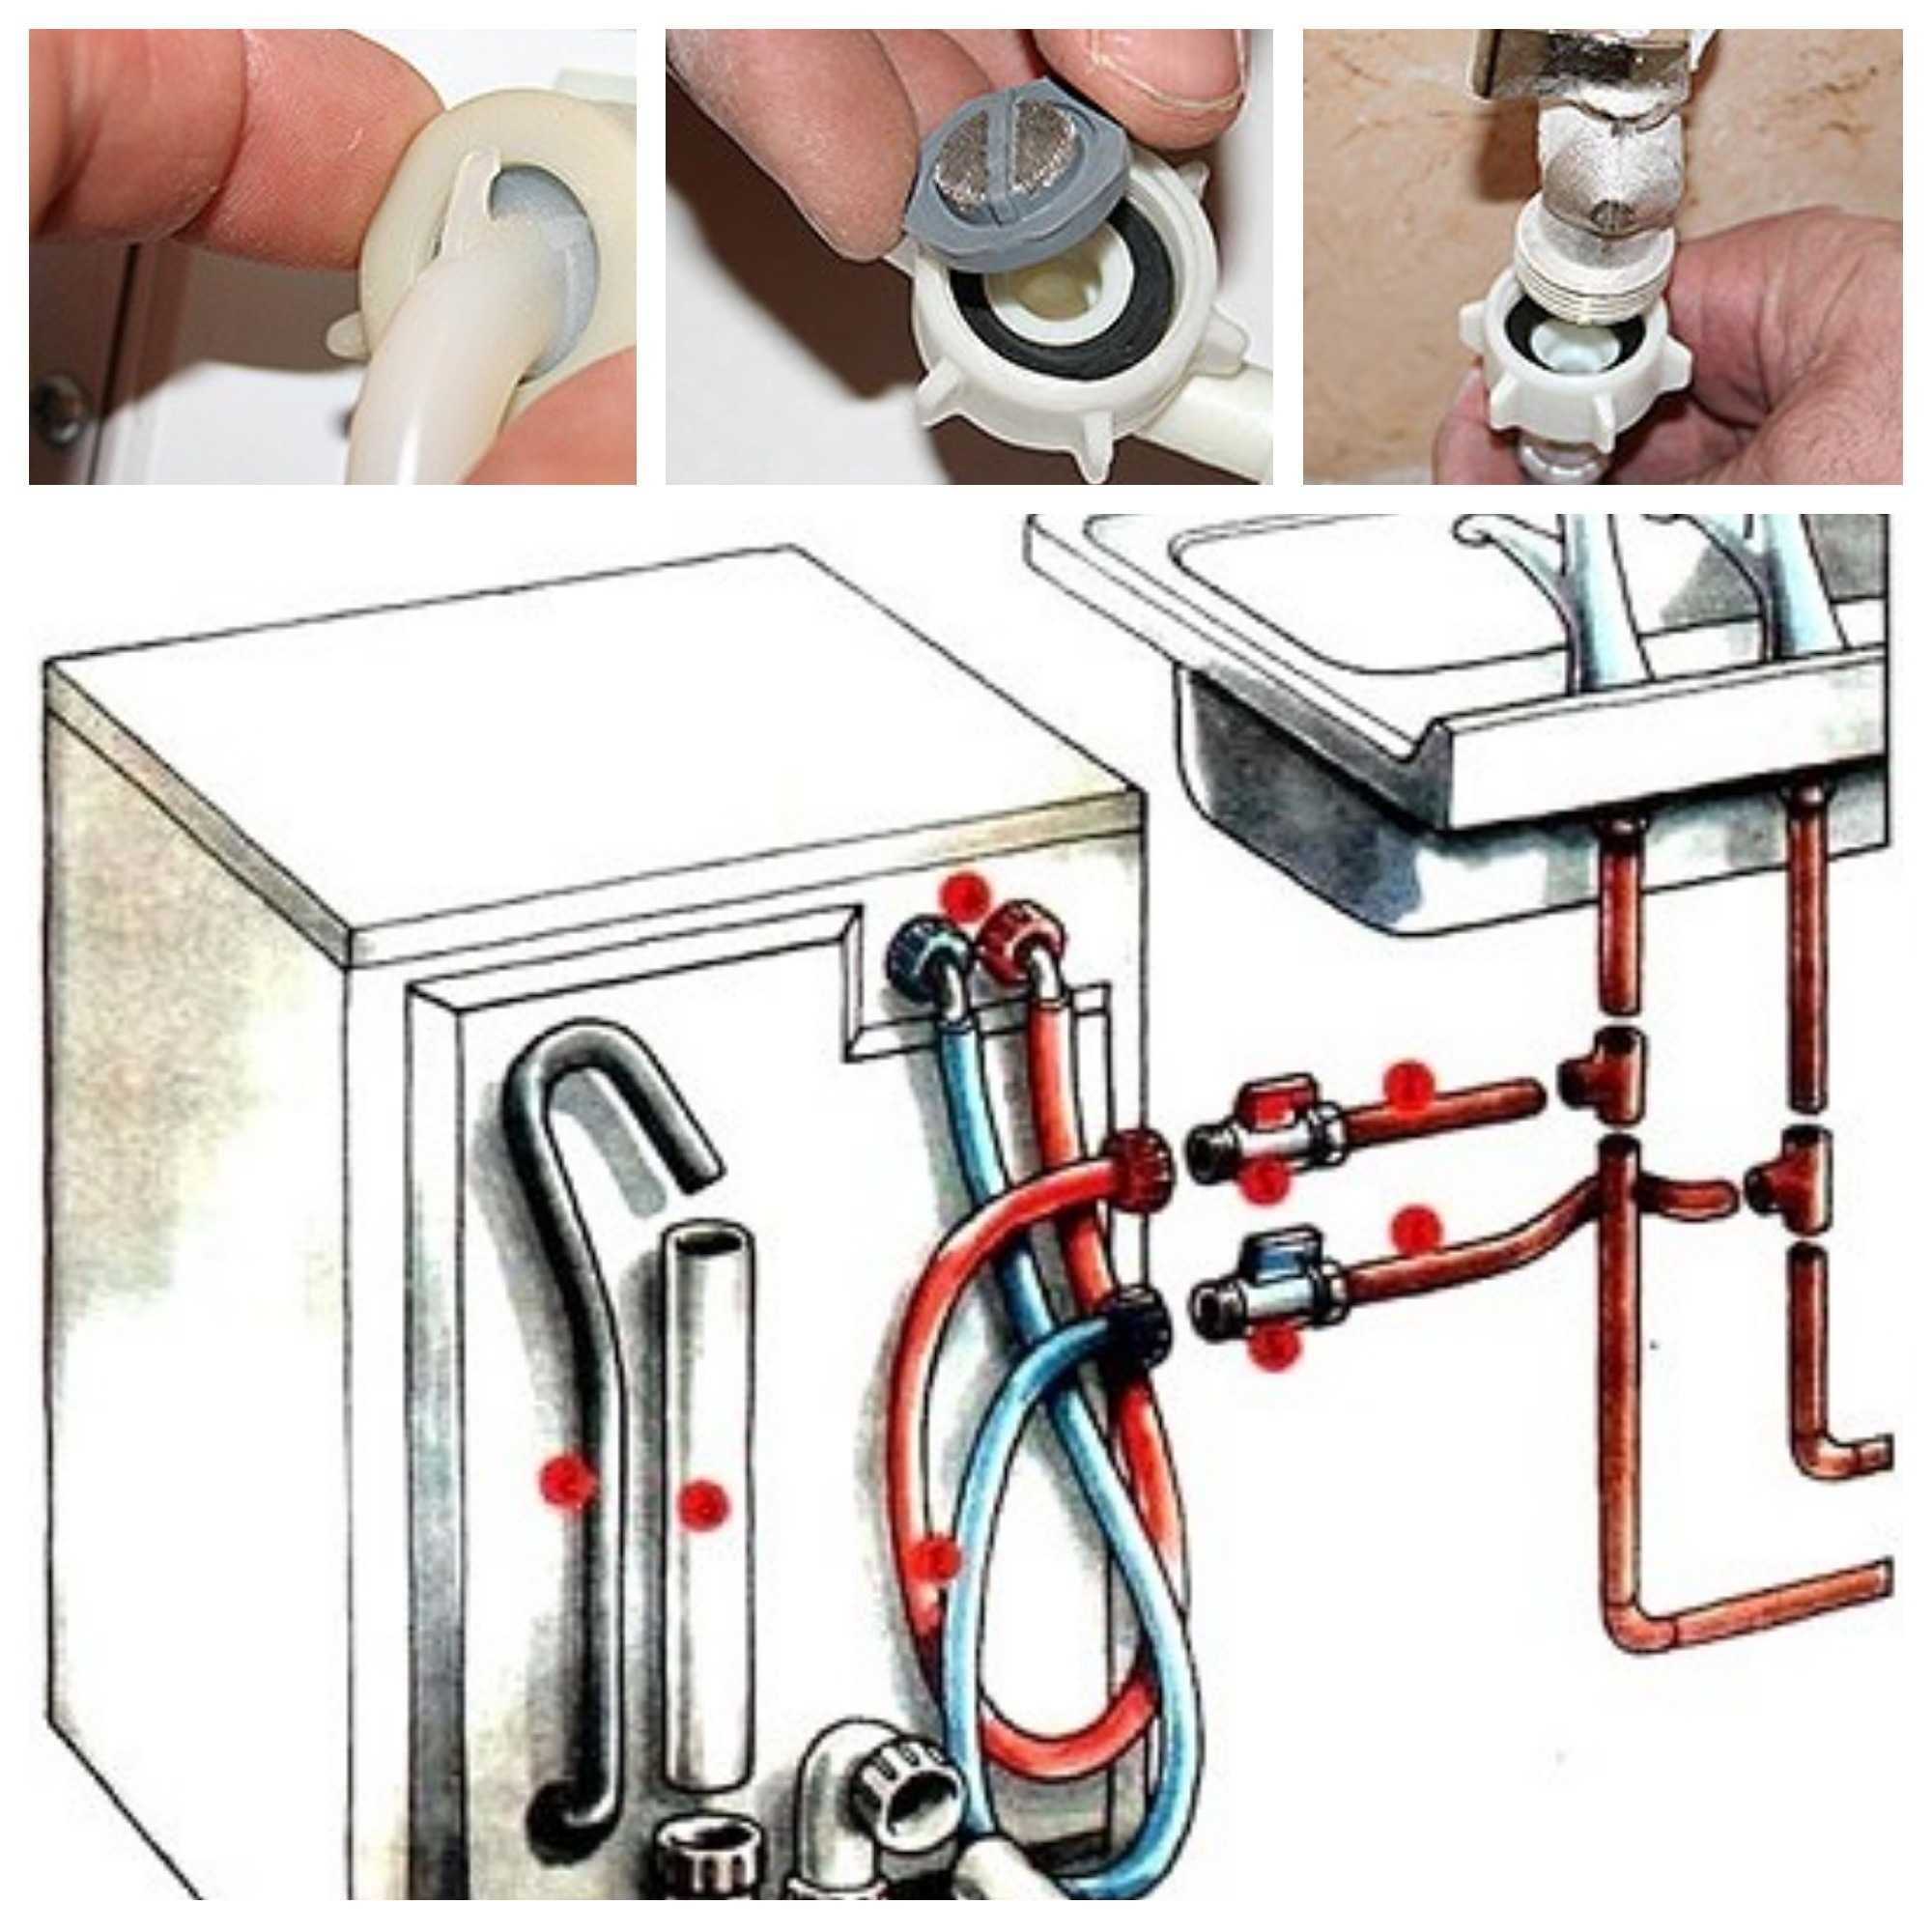 Подключение стиральной машины автомат к водопроводу, канализации и электричеству